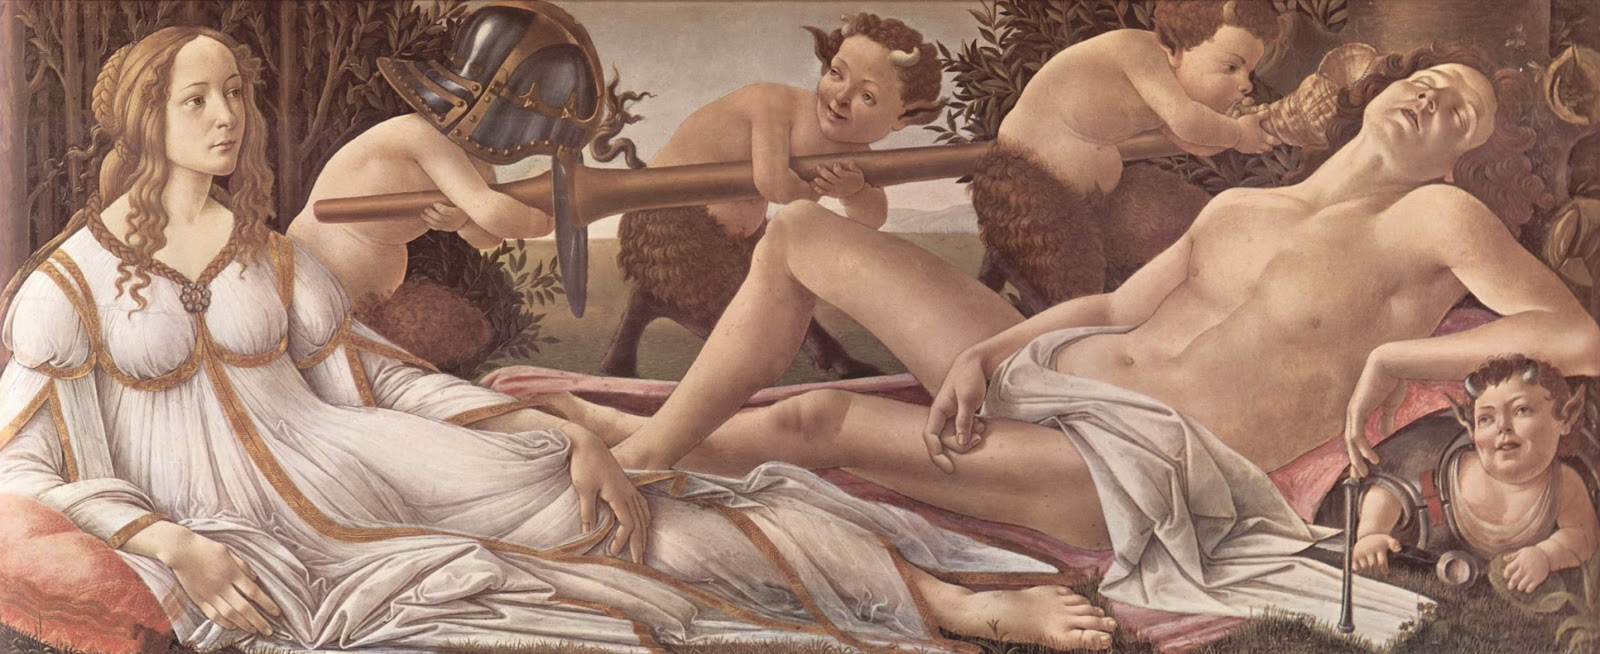 Sandro+Botticelli-1445-1510 (301).jpg